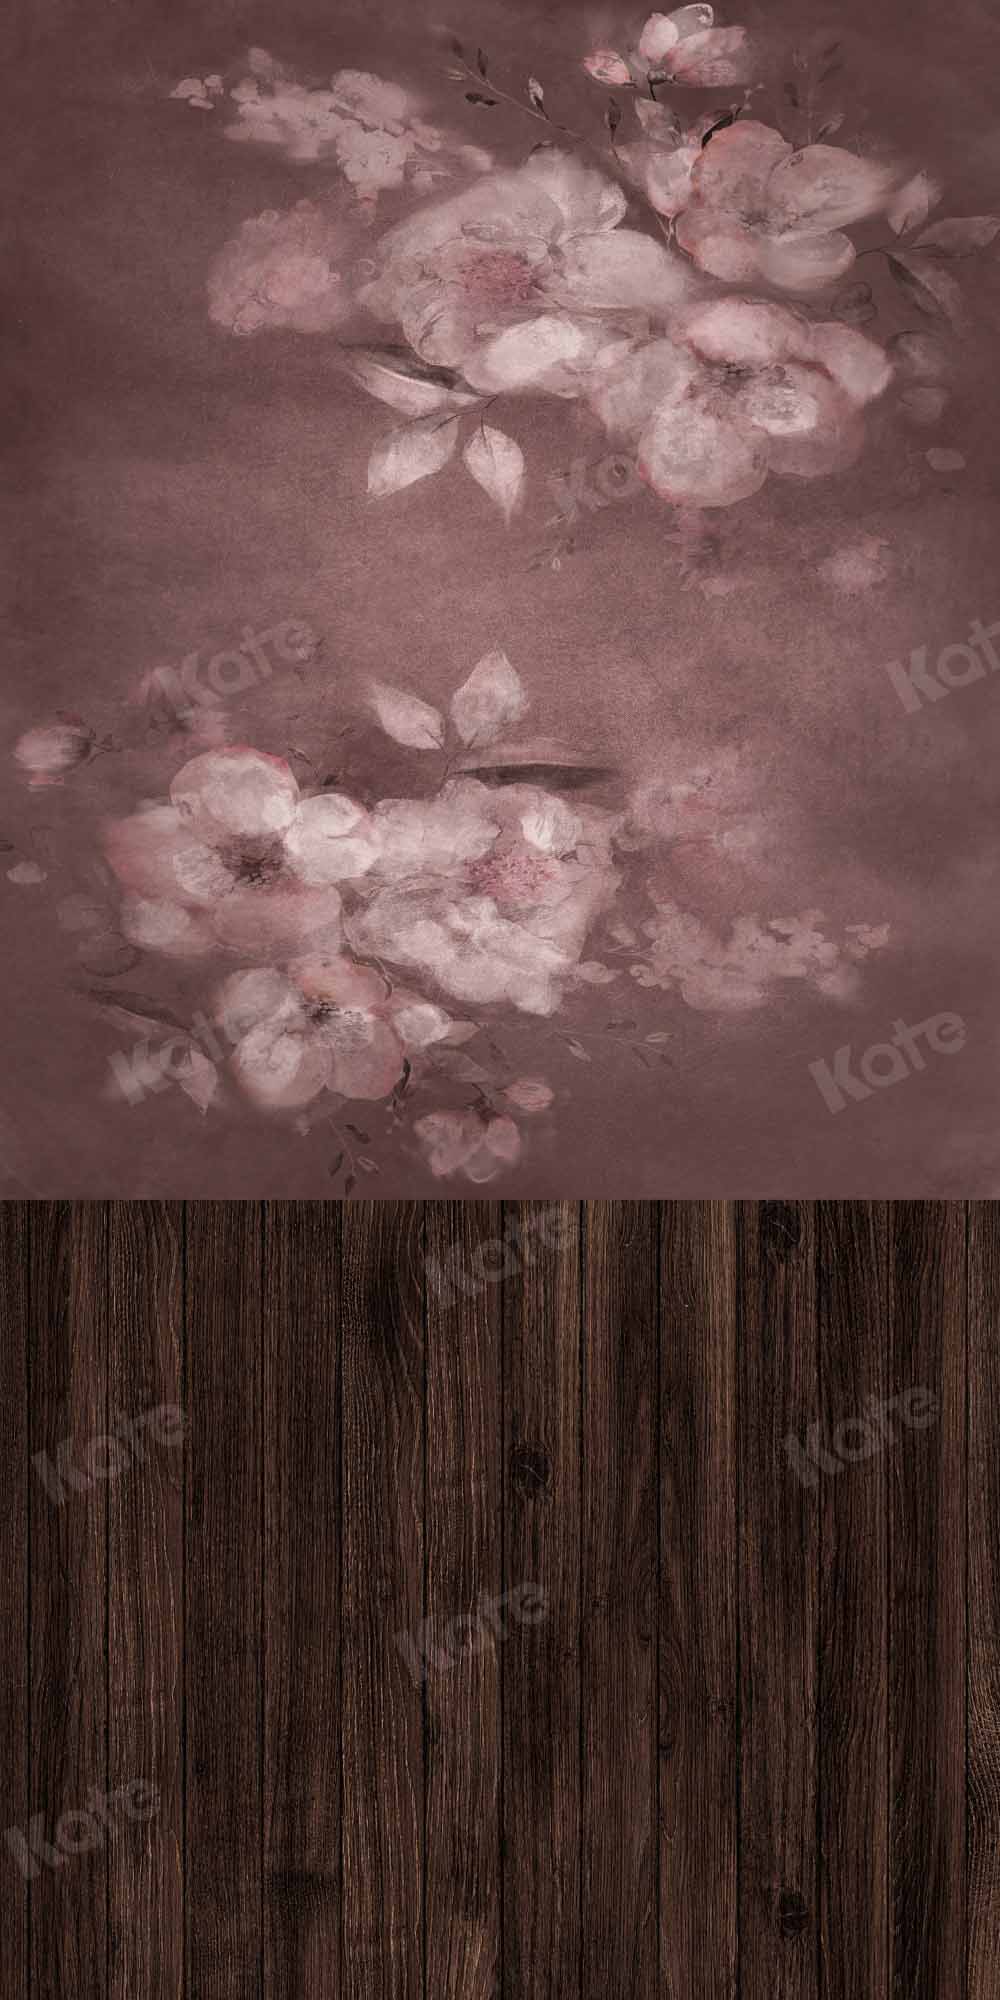 Kate Fleurs abstraites Toile de fond Épissage de planche de bois conçu par Chain Photography